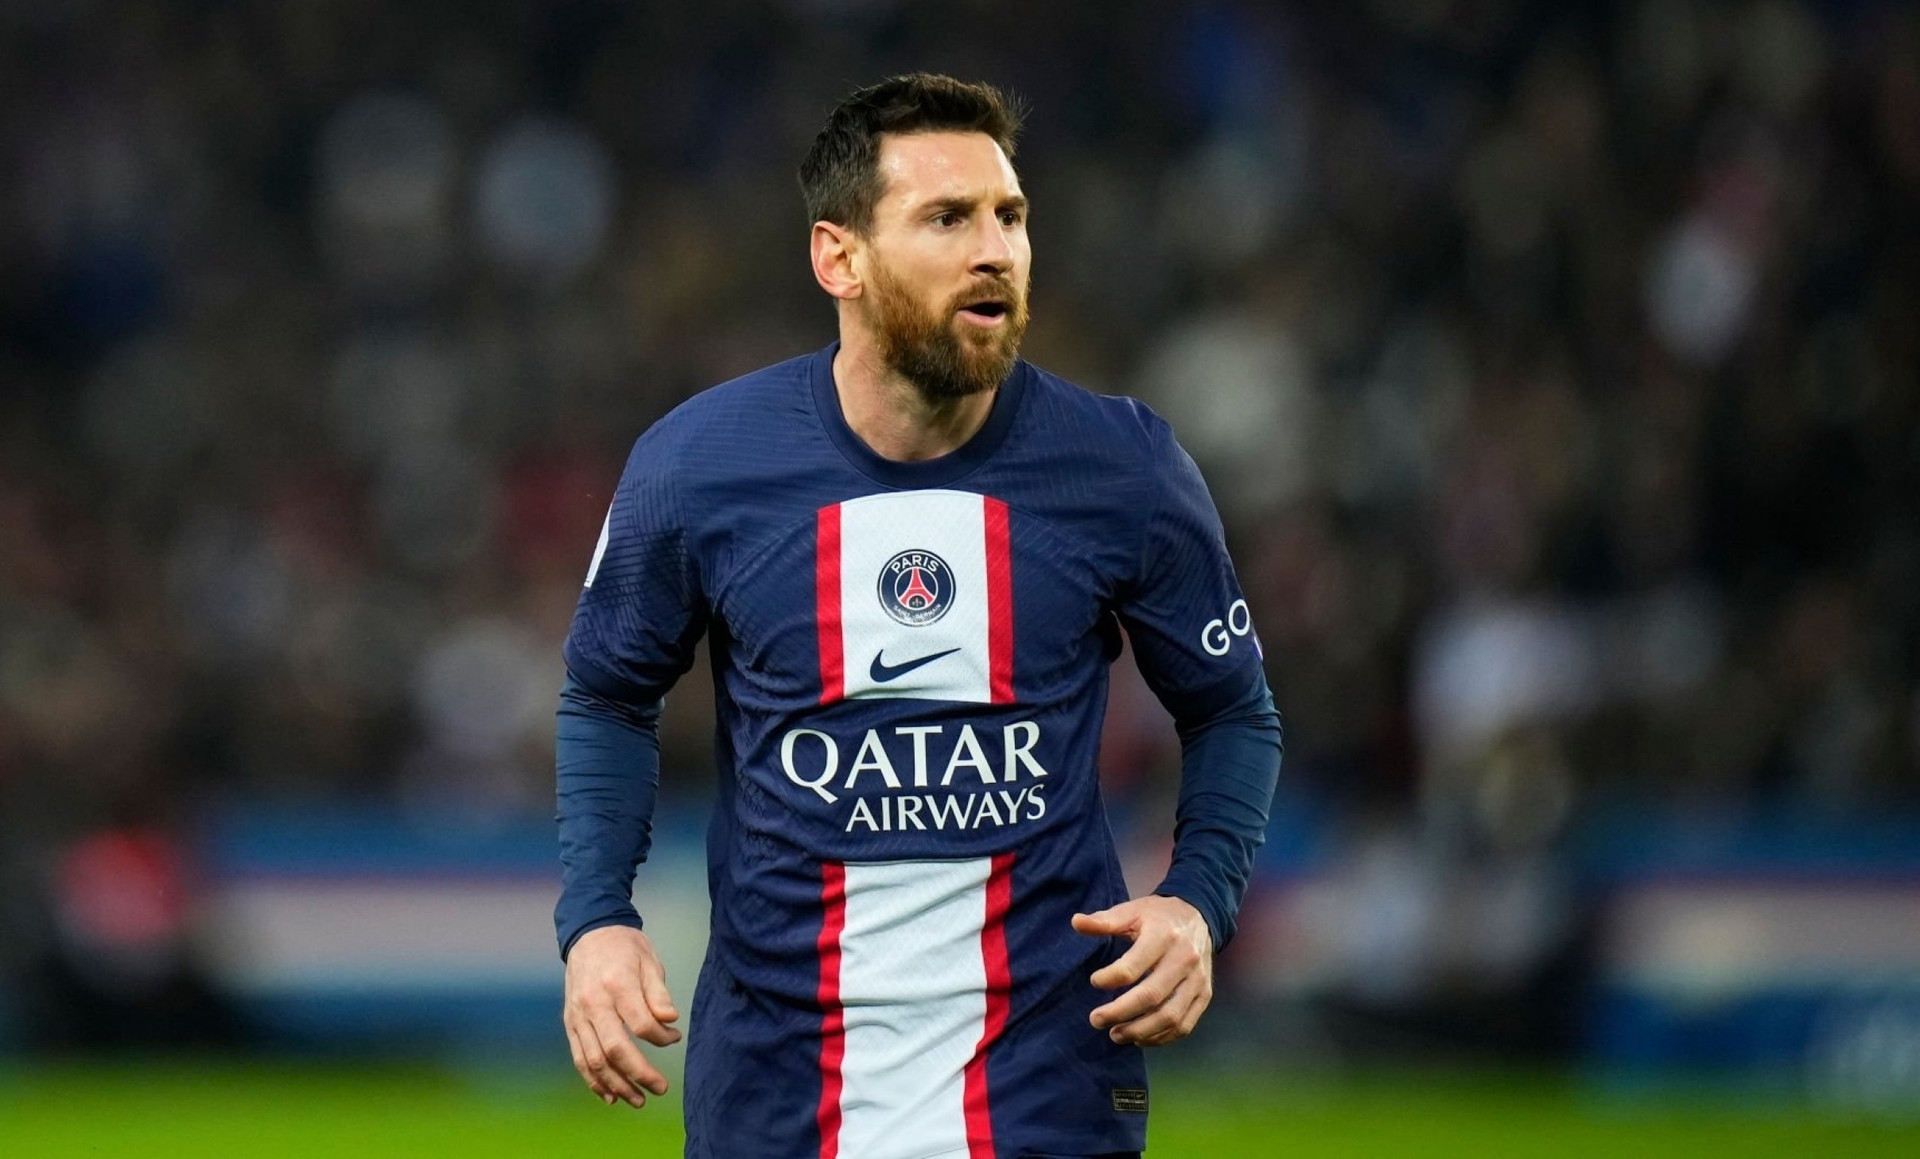 Cuộc hẹn giữa Messi và doanh nhân Phạm Ngọc Quốc Cường, có mặt ca sỹ Jack diễn ra khi siêu sao người Argentina còn khoác áo PSG.